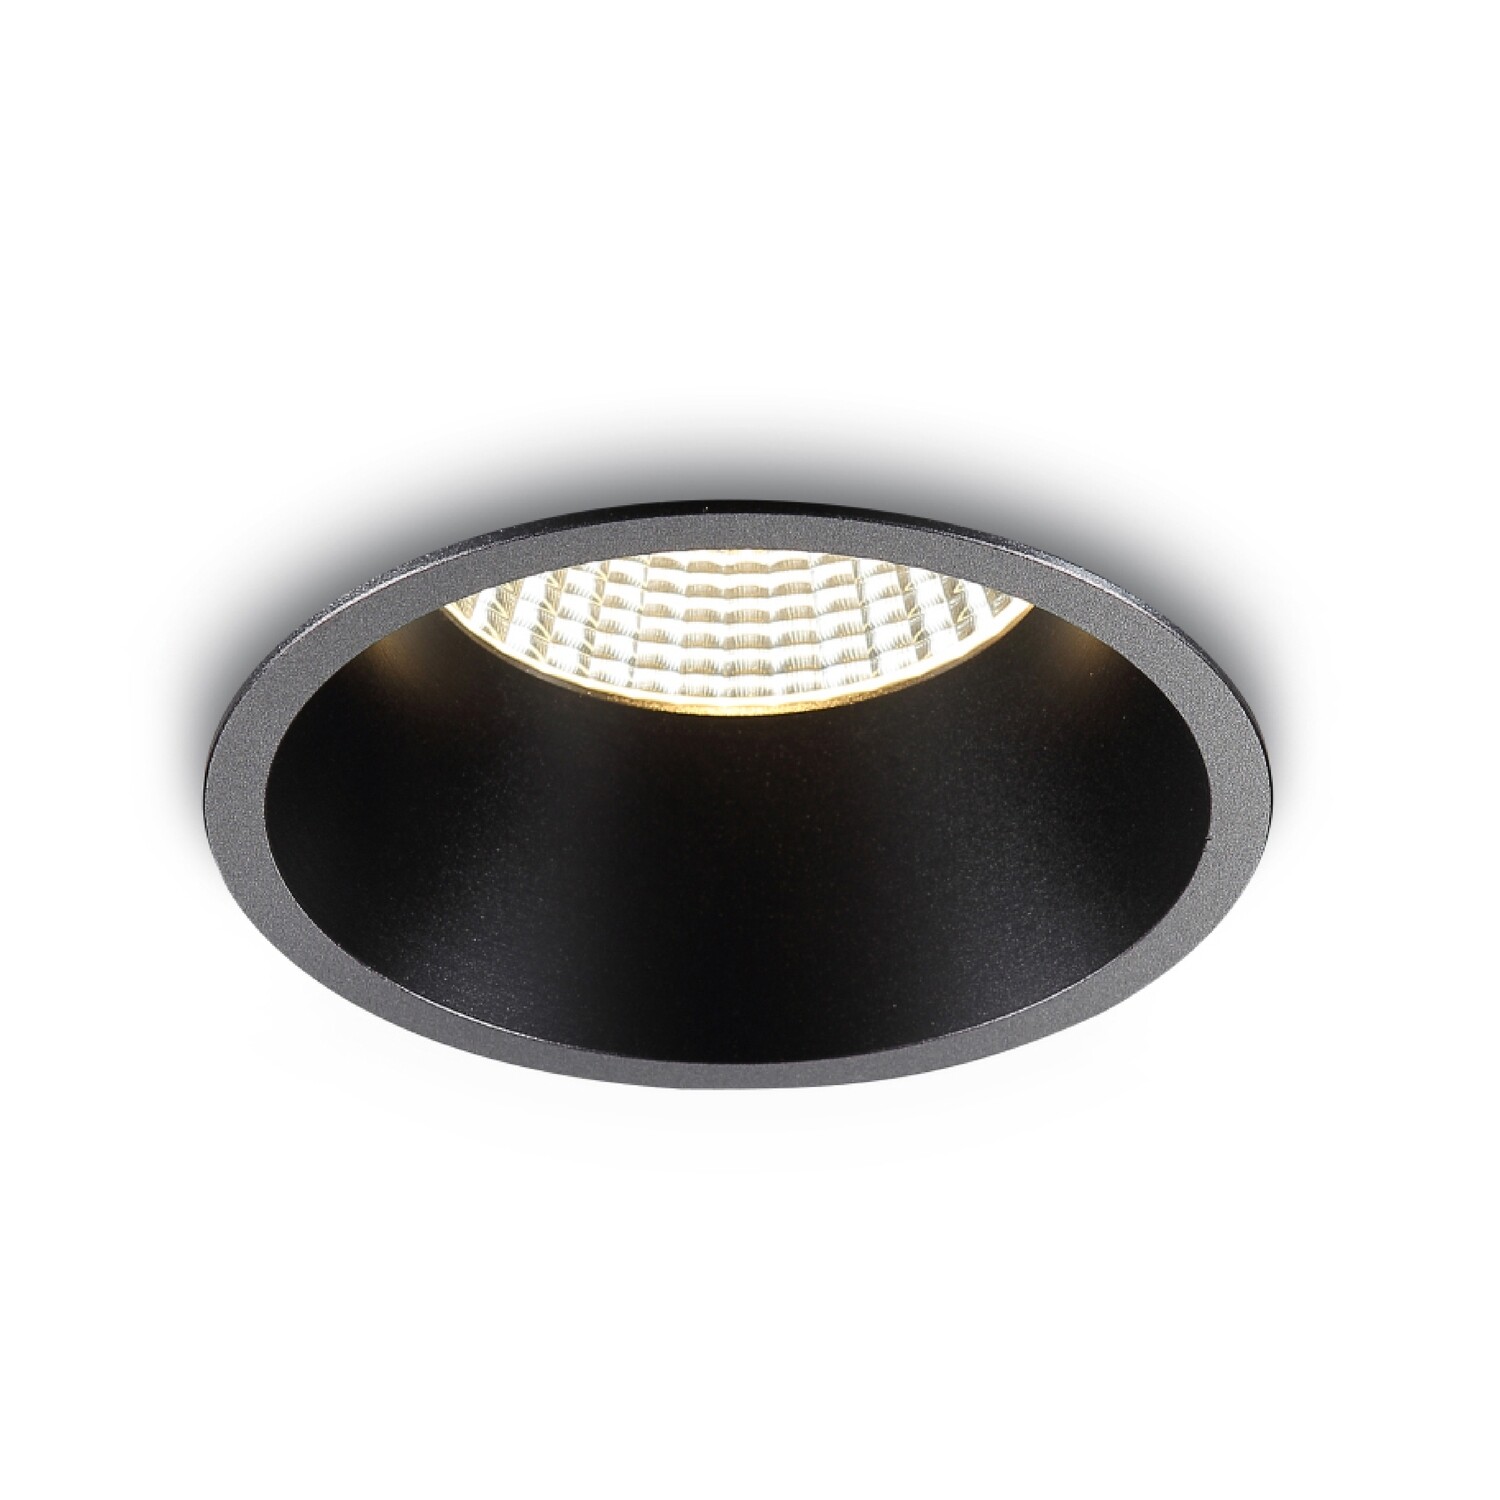 Lámpara tipo ojo de buey redondo de 5" luz profunda contorno negro tipo acrílico de luz cálida.